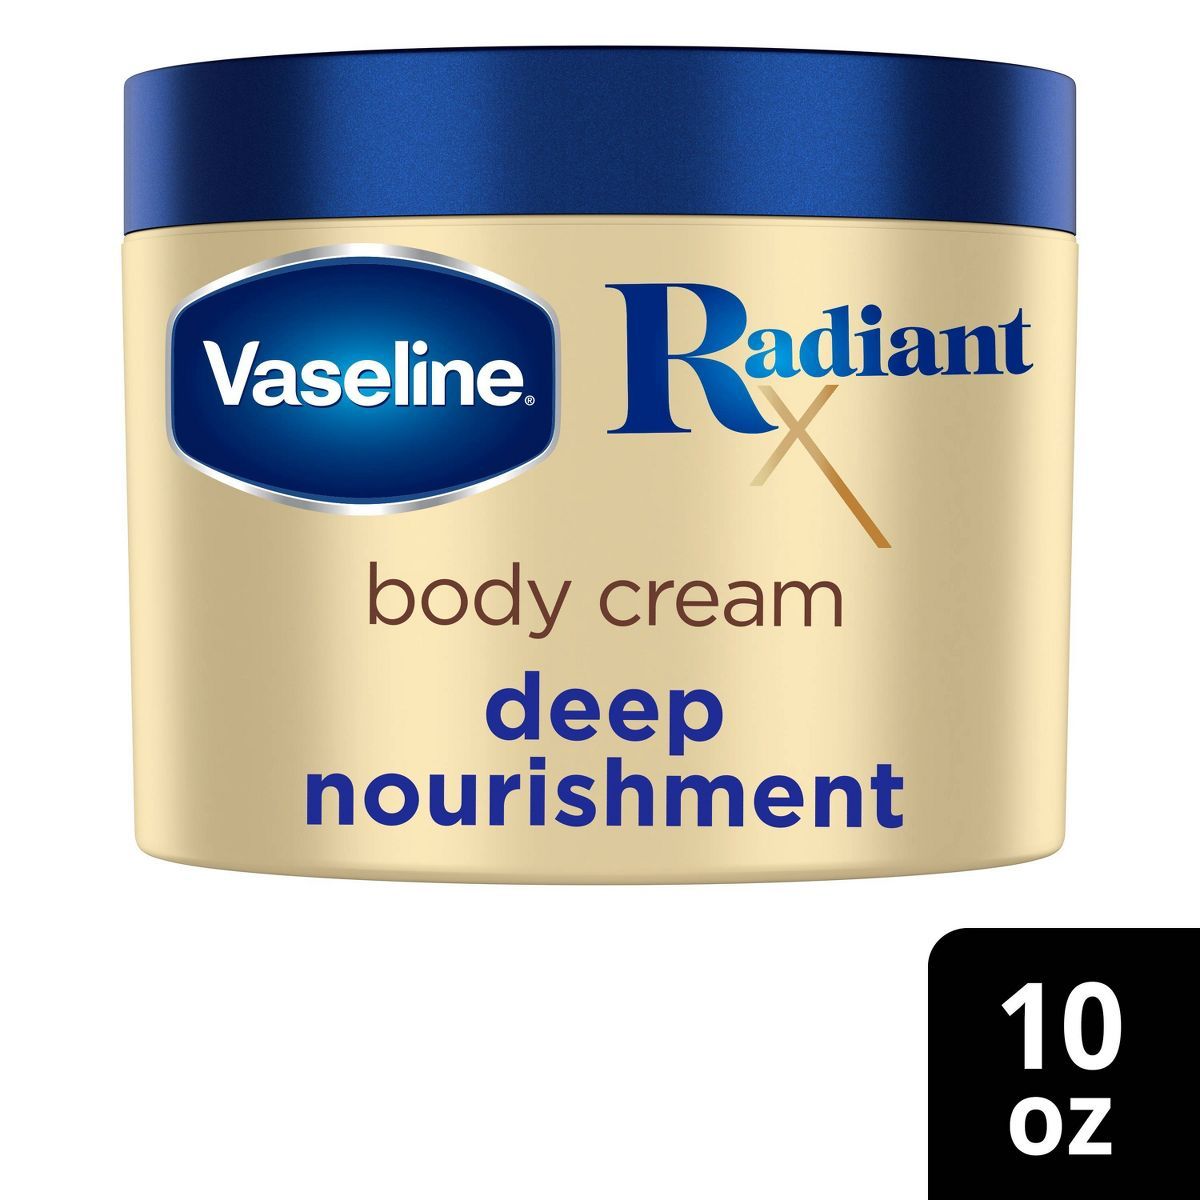 Vaseline Radiant x Deep Nourishment Body Cream - 10oz | Target